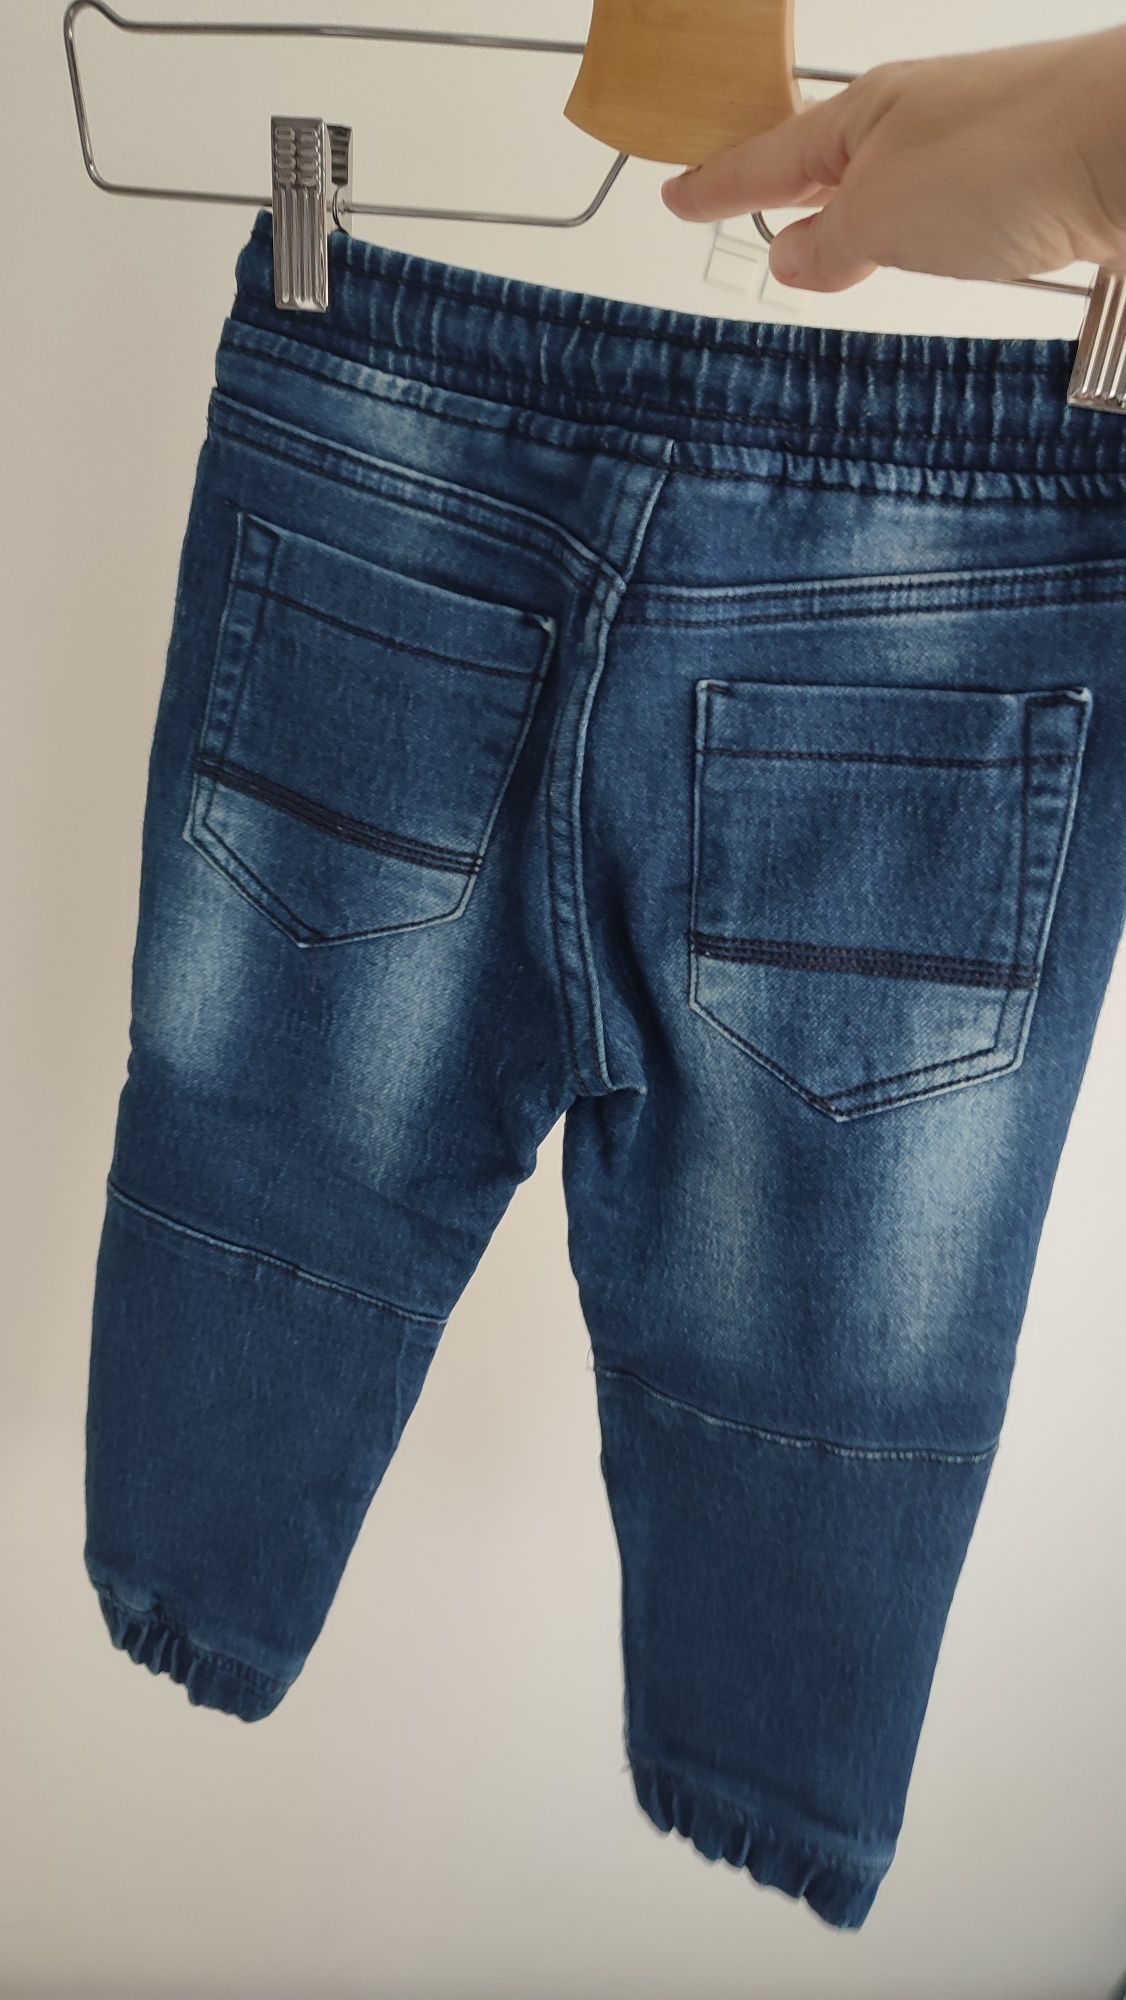 Spodnie jeansowe typu joggersy dla chłopca rozm 104 wiosna wyprawka